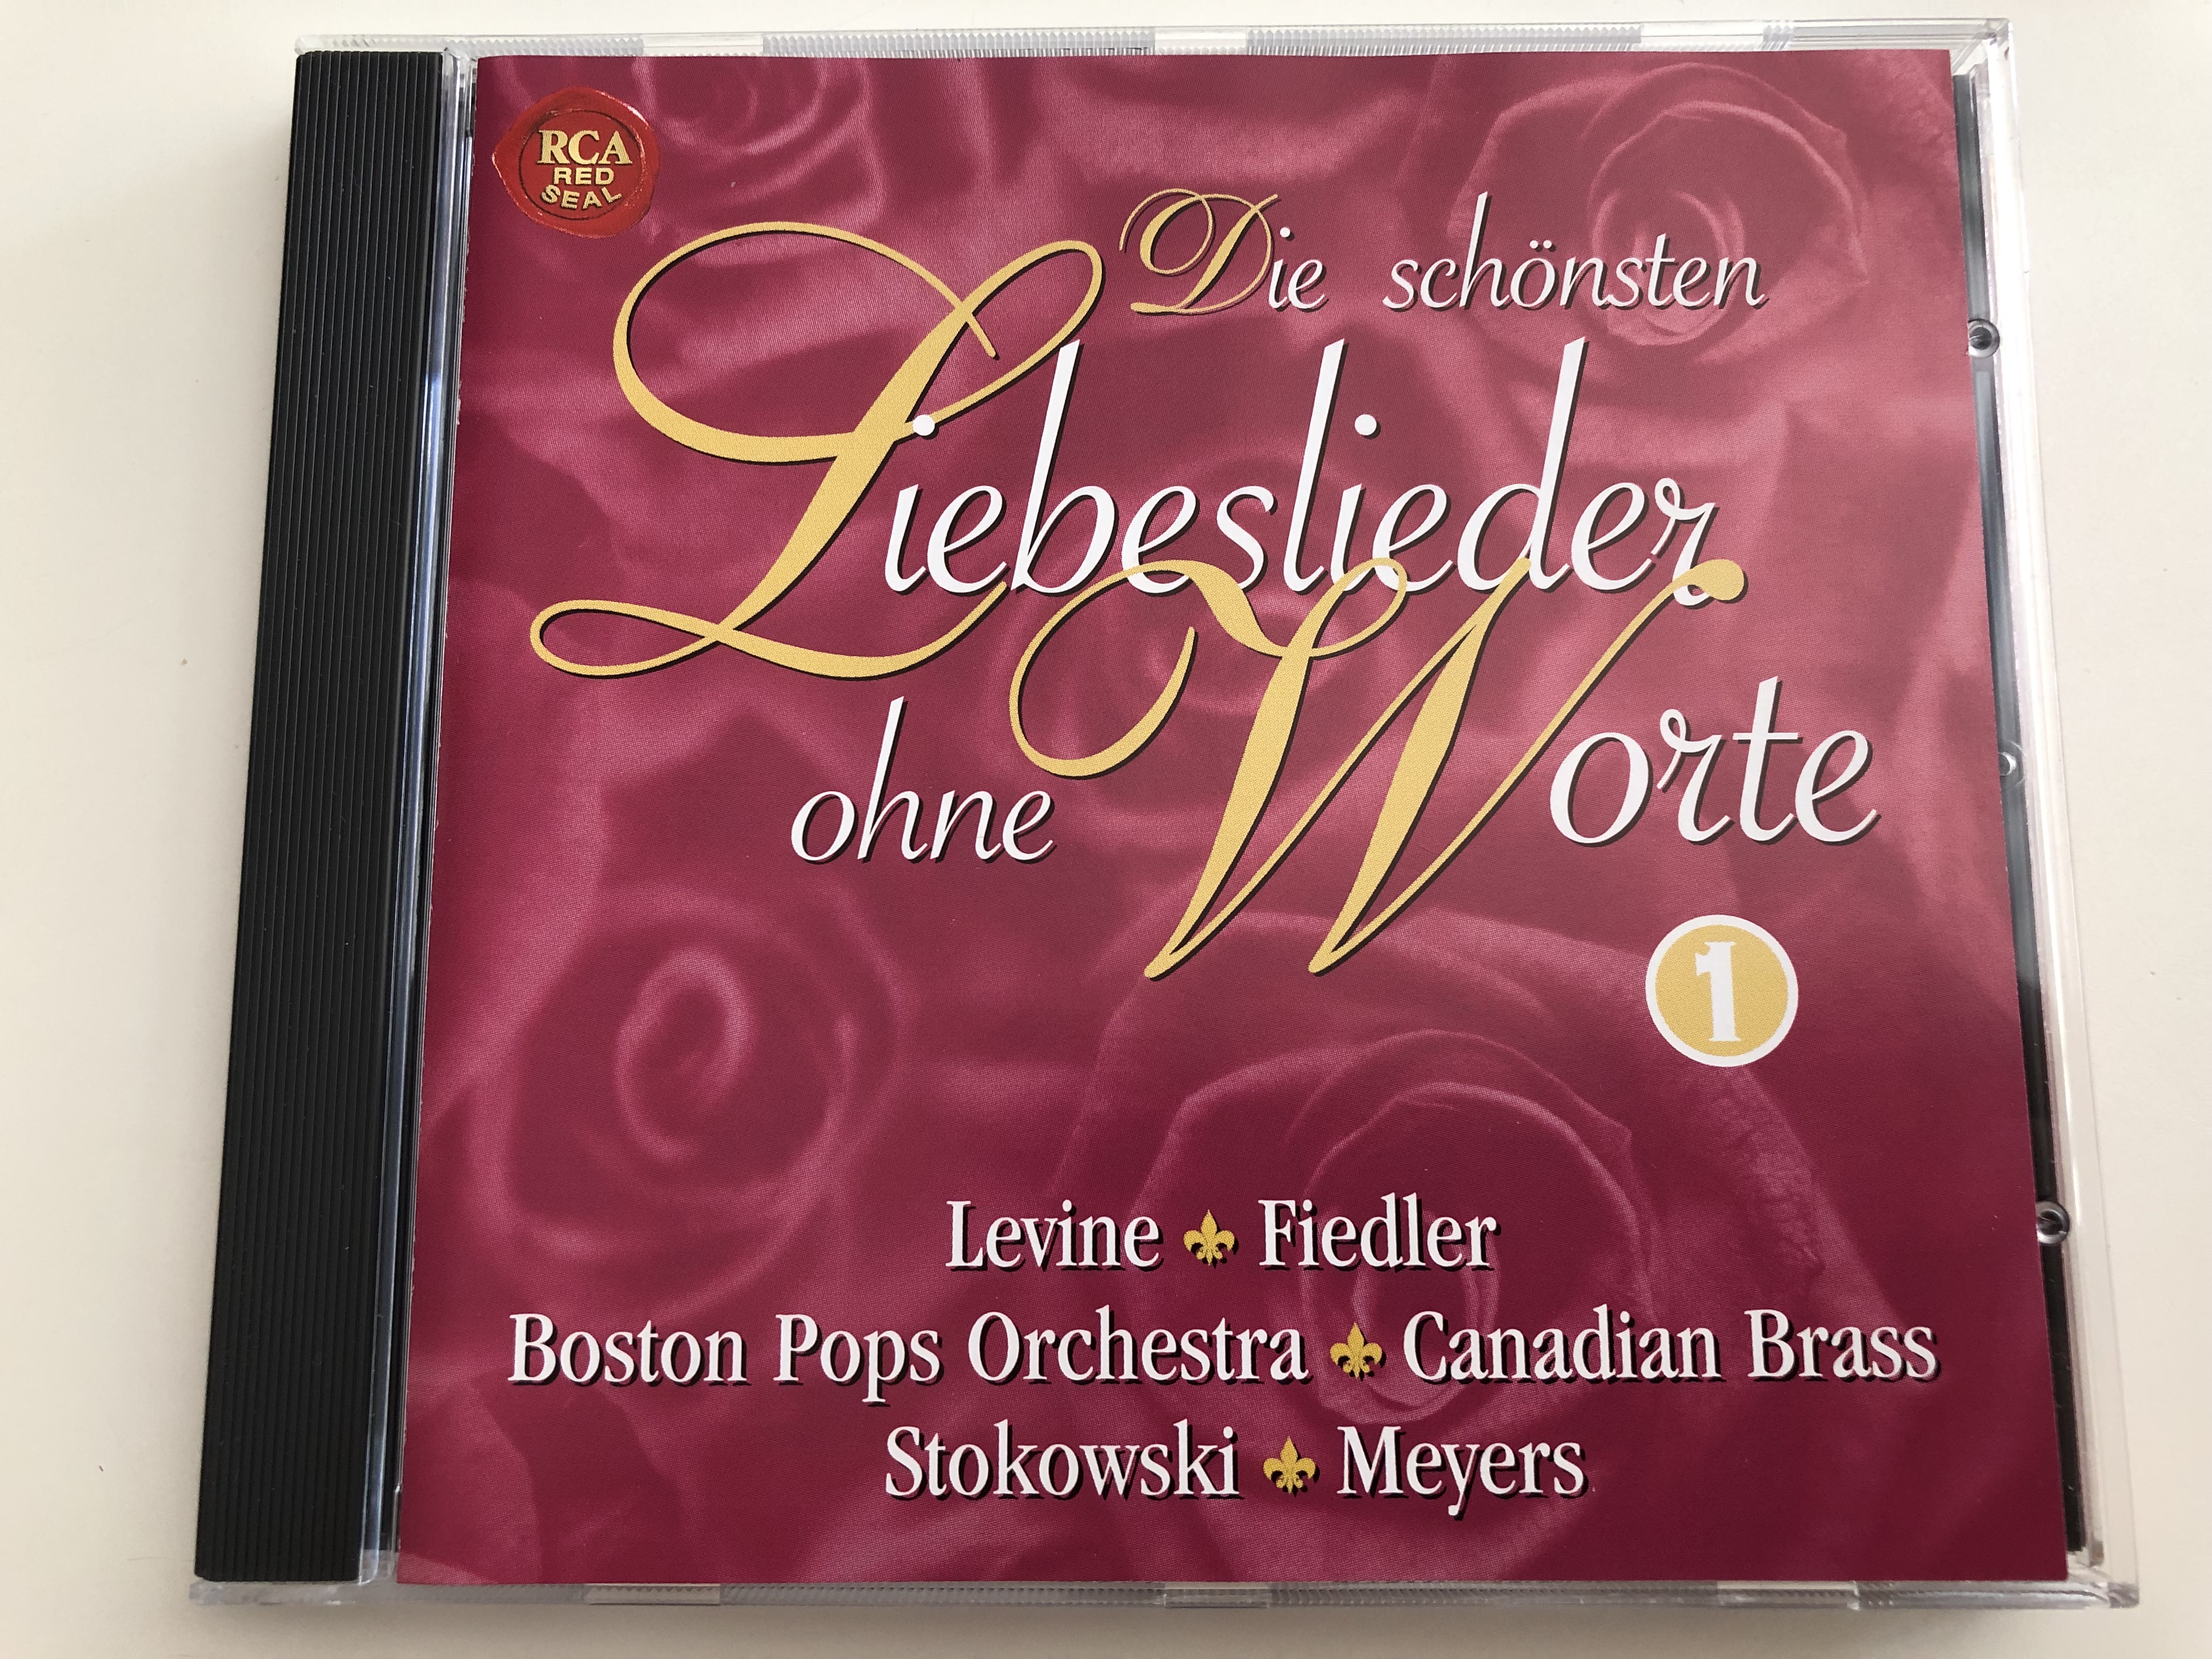 die-sch-nsten-liebeslieder-ohne-worte-vol-1.-levine-fiedler-boston-pops-orchestra-stokowski-meyers-the-most-beautiful-love-songs-instrumental-audio-cd-volume-1-1-.jpg